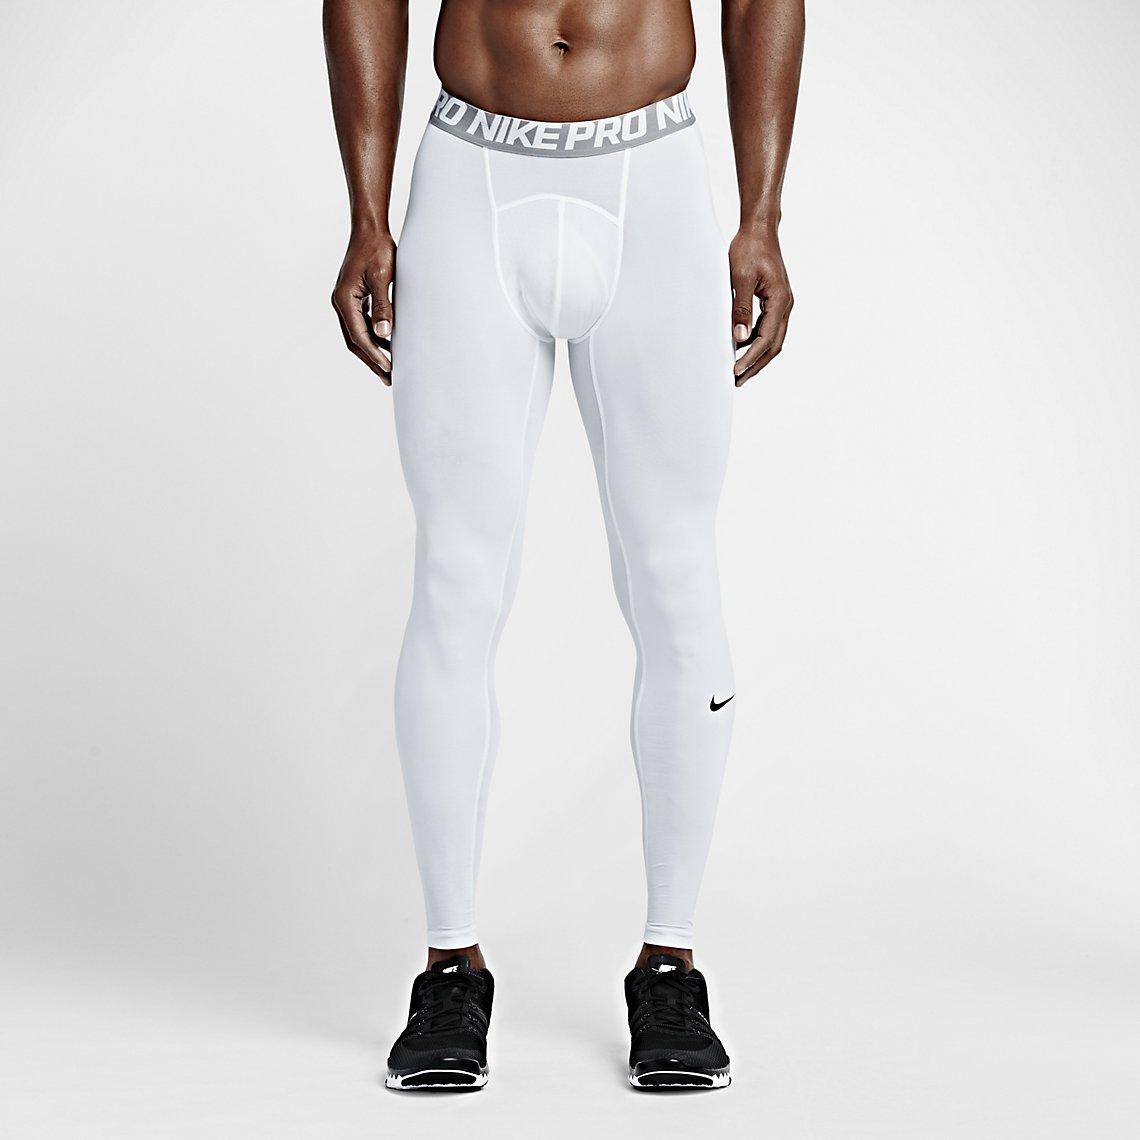 Nike Pro ergonomic legging, Nike